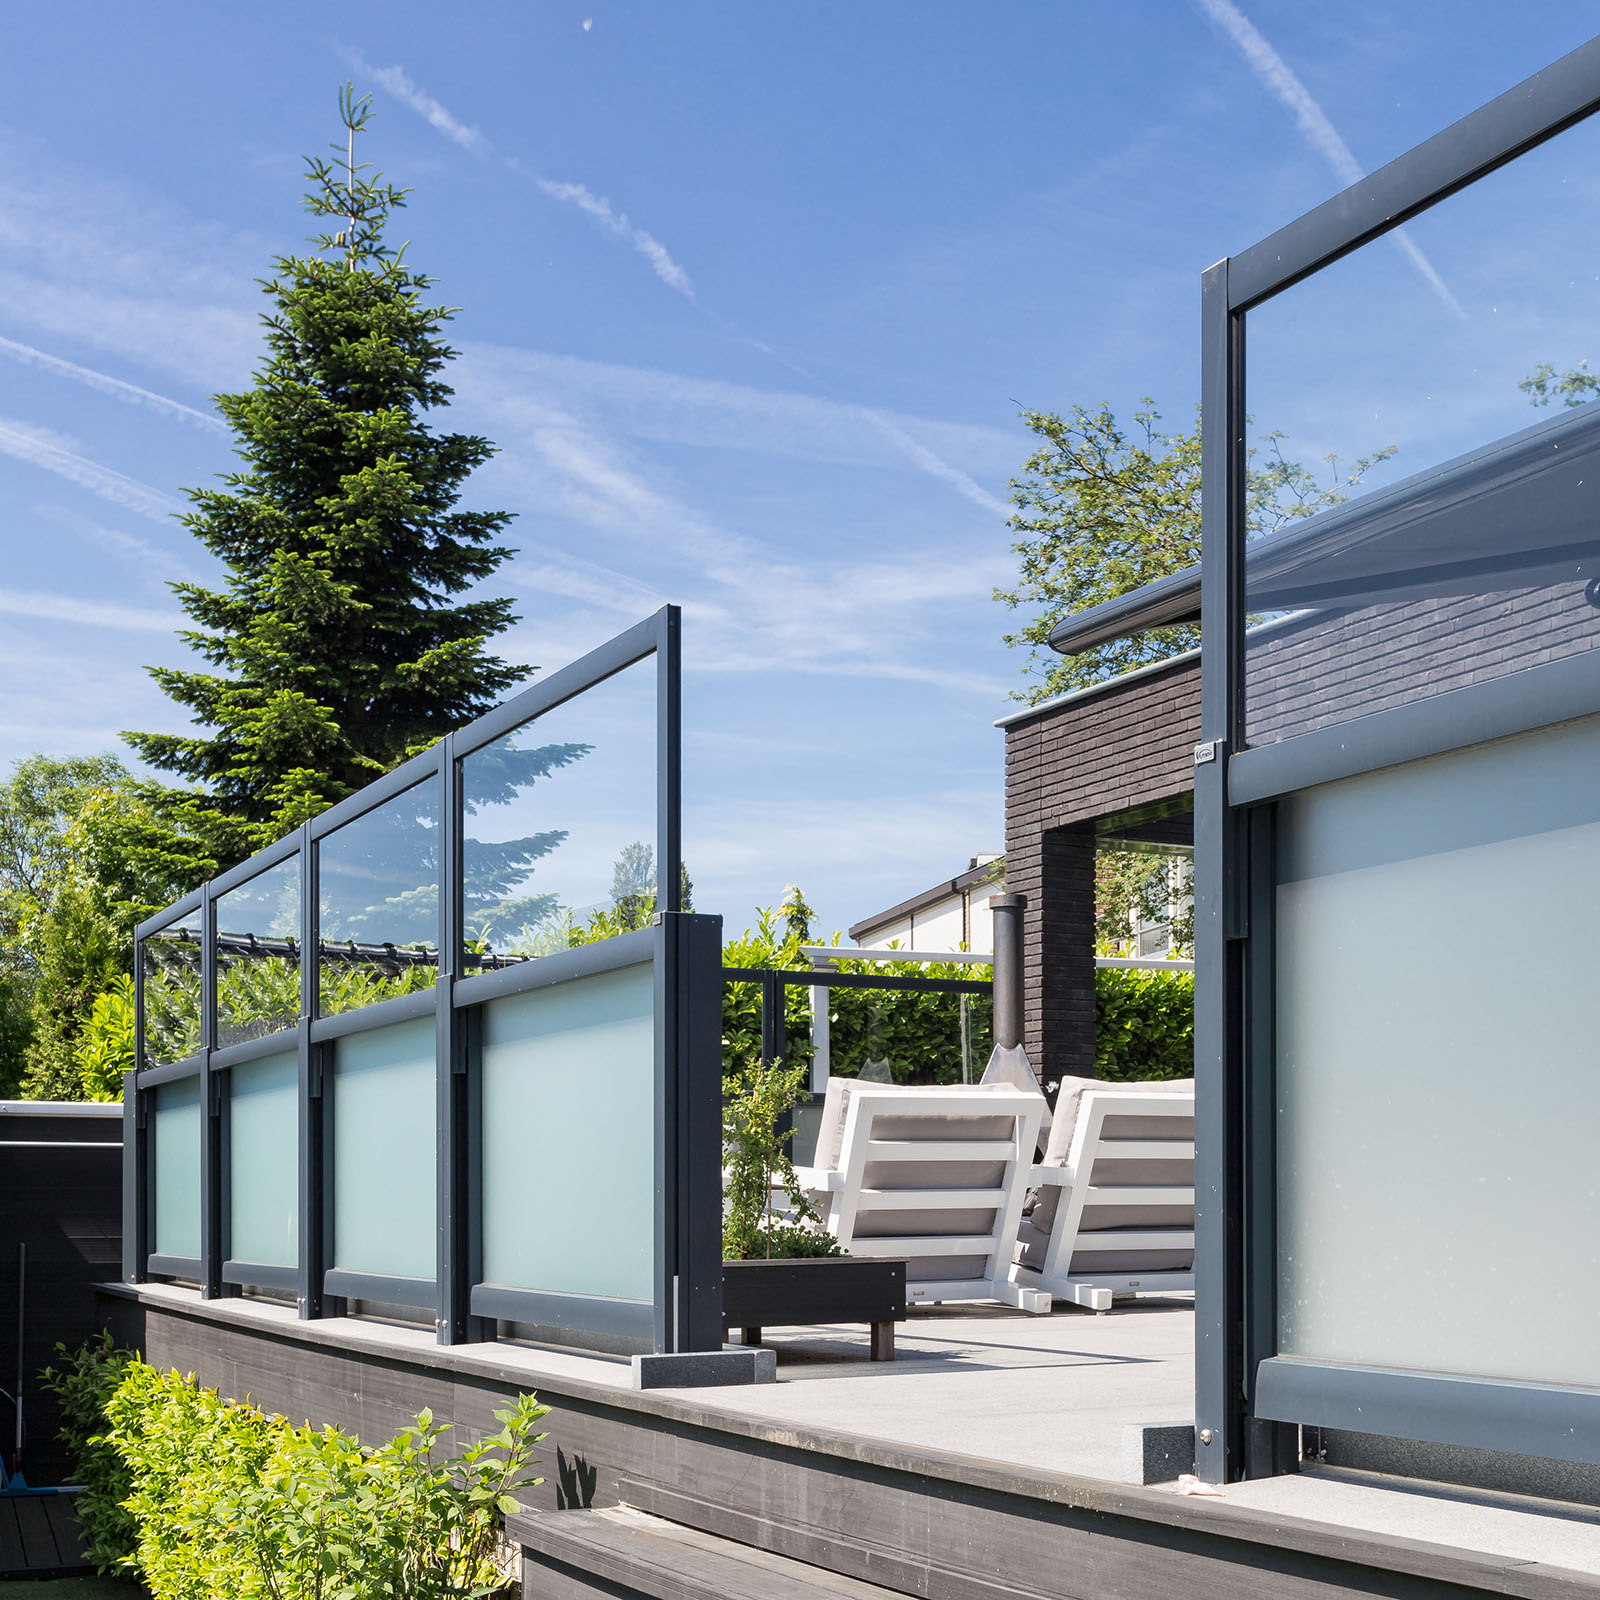 Speciaal van mening zijn was Windschermen: een perfecte oplossing voor een comfortabel terras -  UW-tuin.nl